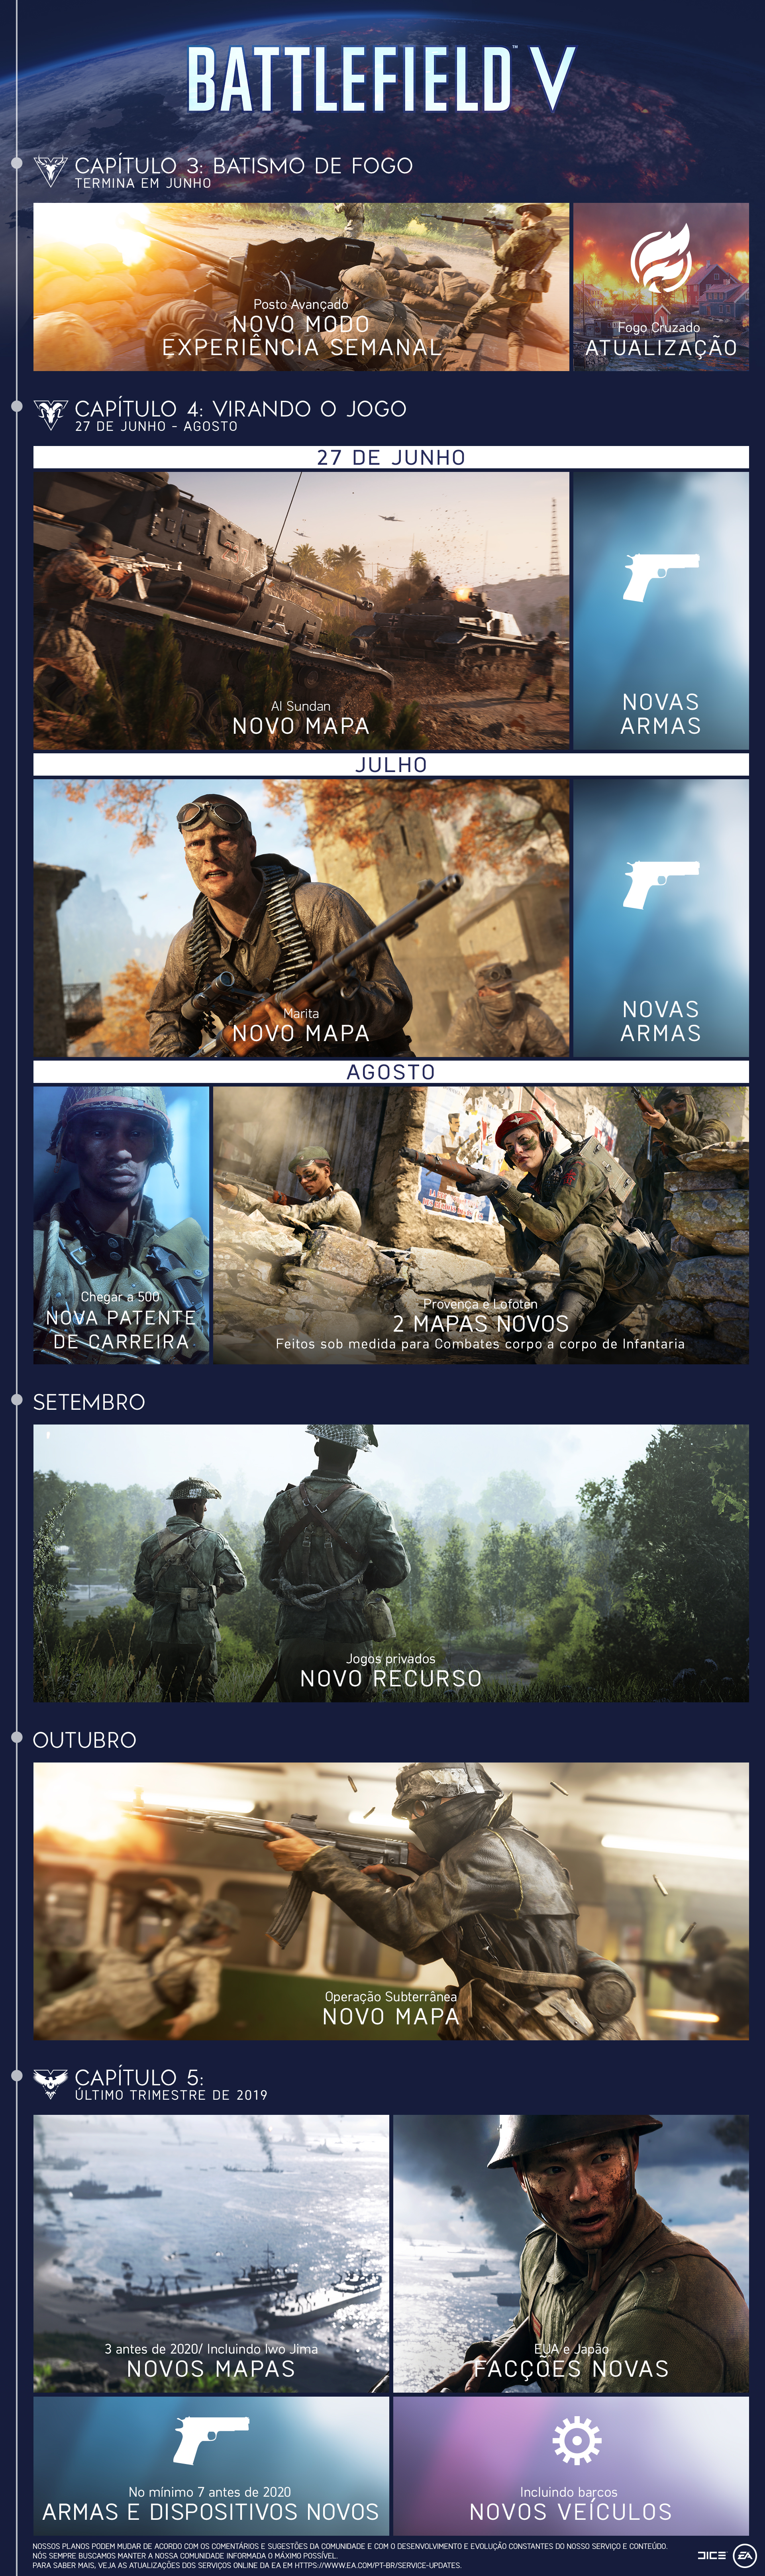 Conteúdos adicionais de Battlefield V serão gratuitos